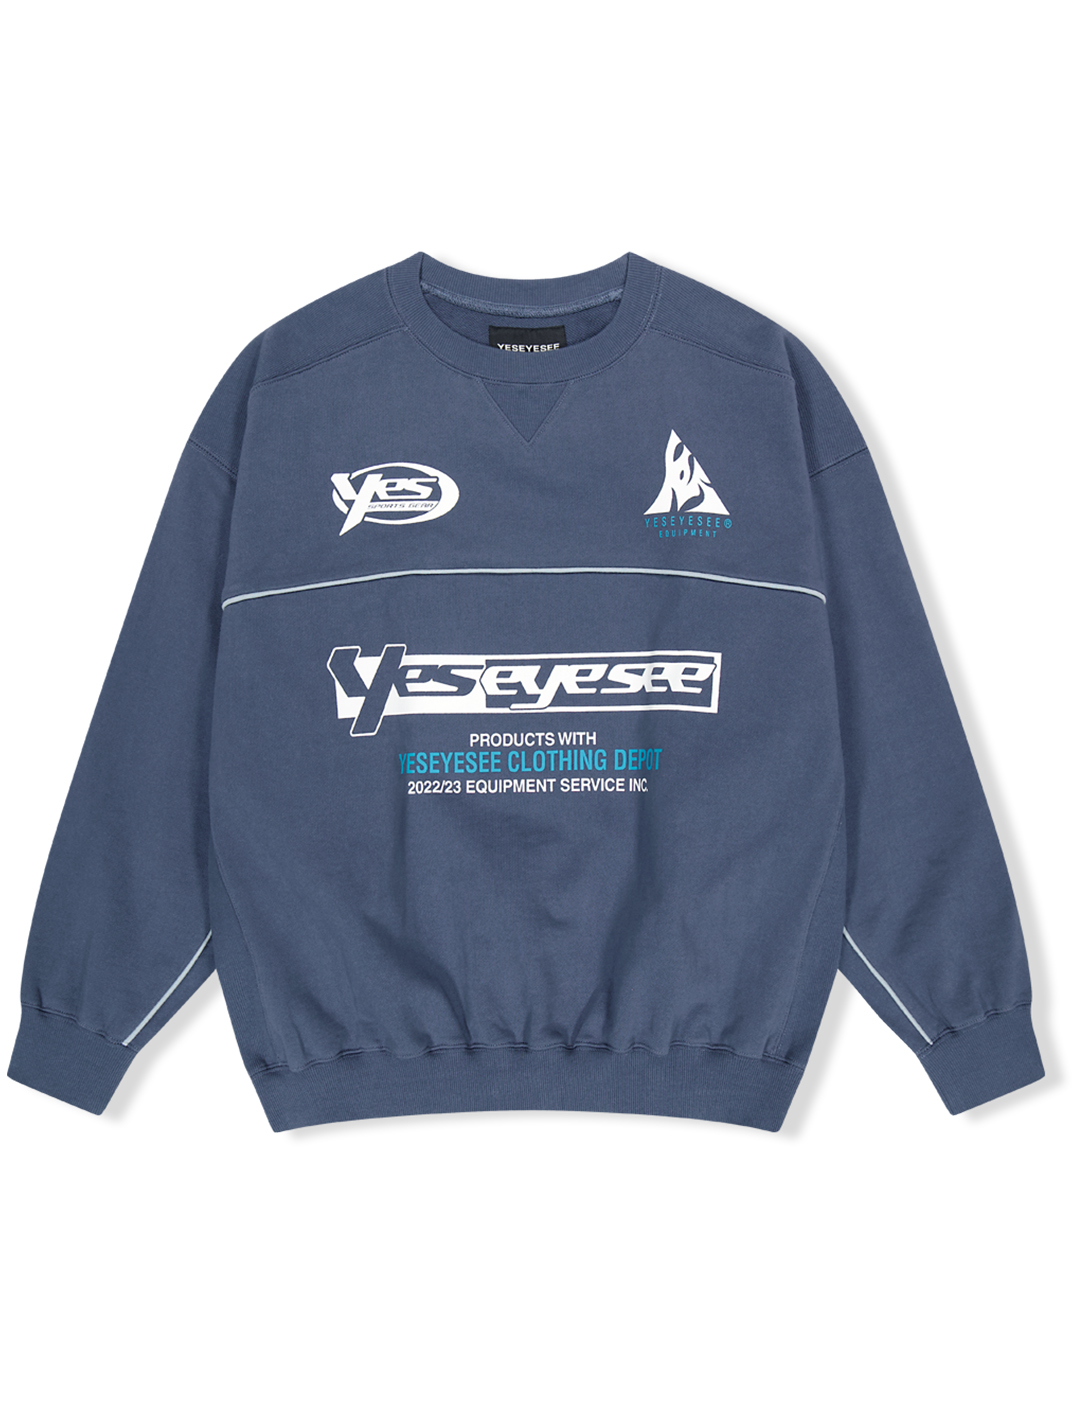 Y.E.S Piping Sweatshirt Indigo